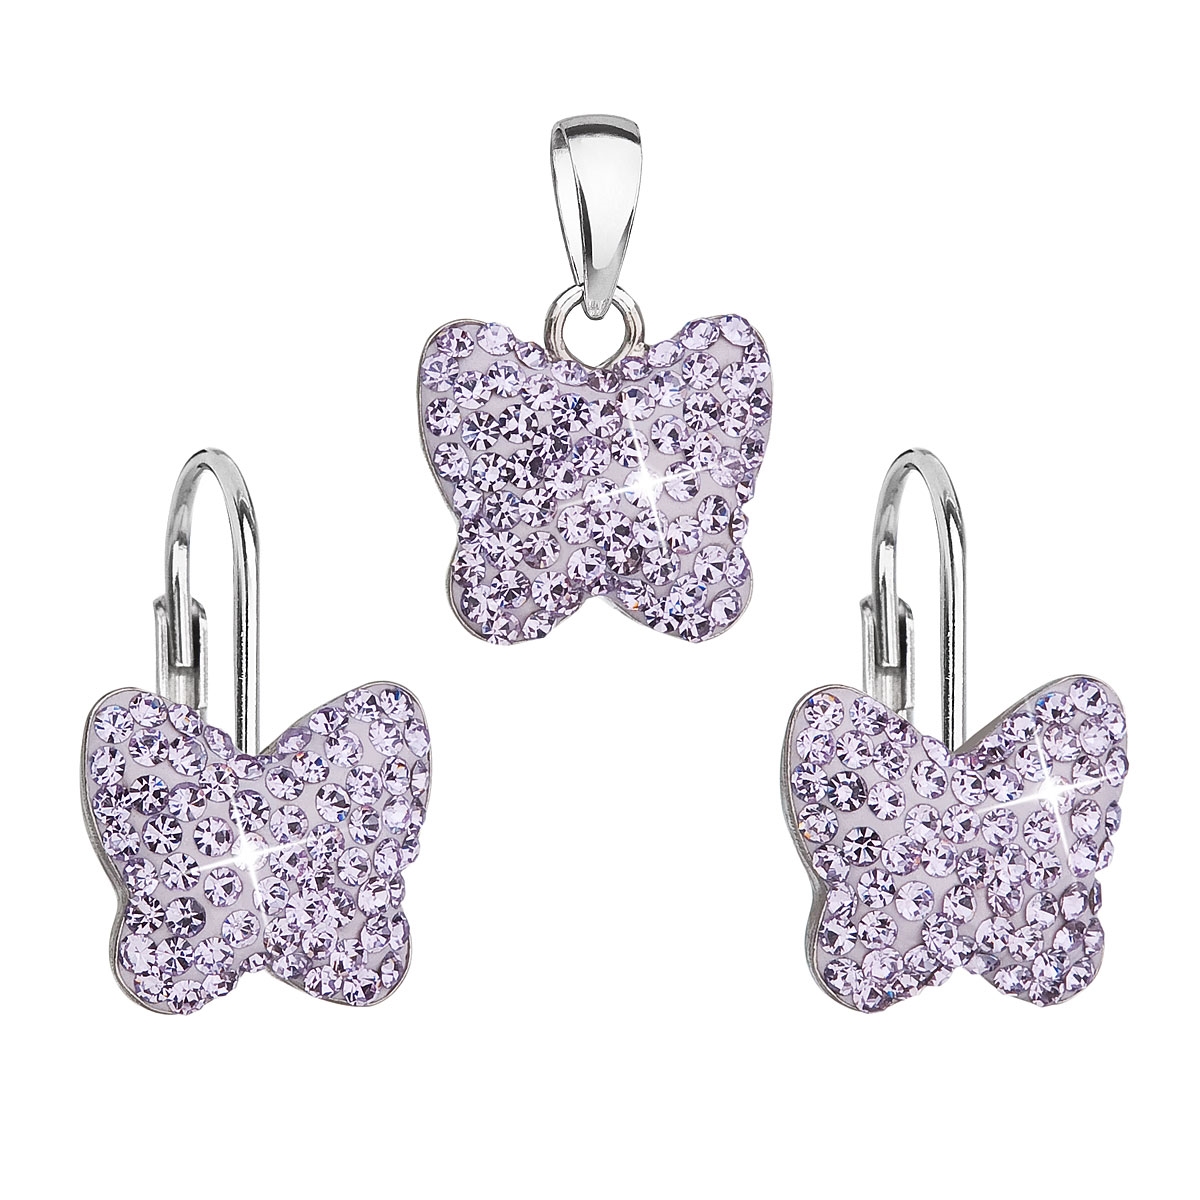 Súprava strieborných šperkov motýle s kryštálmi Crystals from Swarovski ® Violet